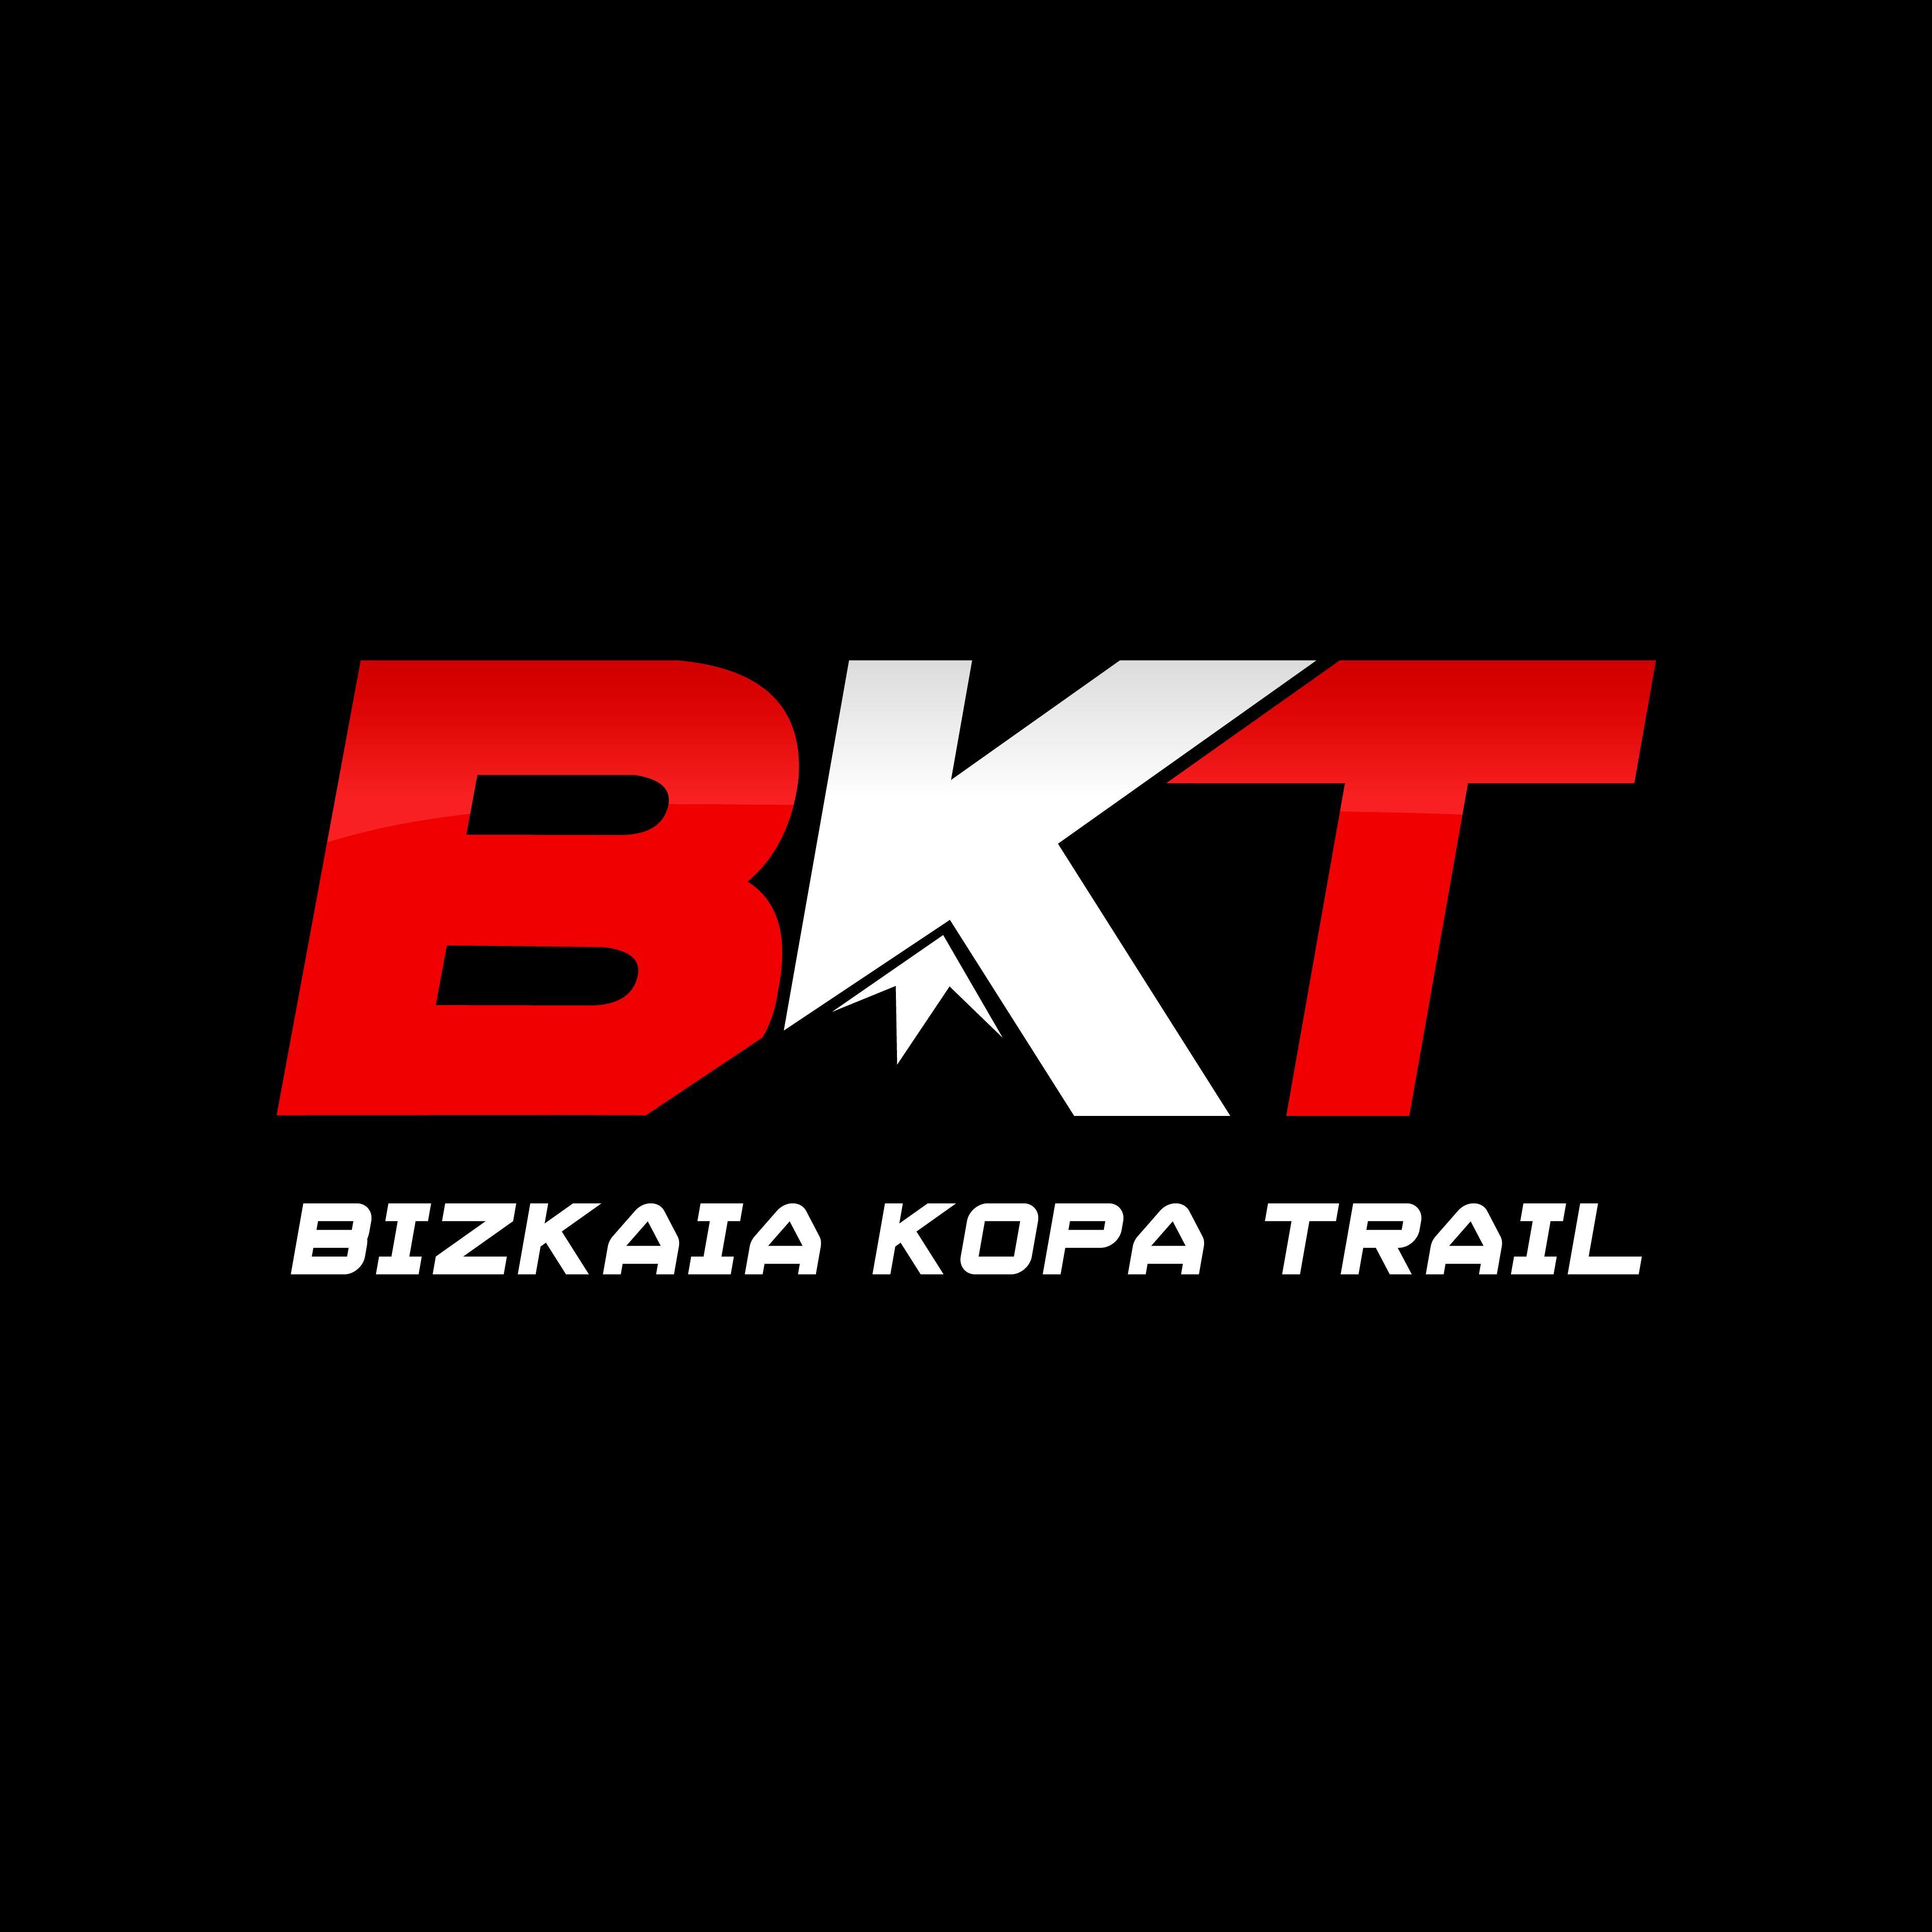 Liga popular de montaña - Trail, MTB, canicross y marcha de montaña
Mendi kopa herrikoia - Traila, MTBa, txakurkrossa eta mendi martxa.